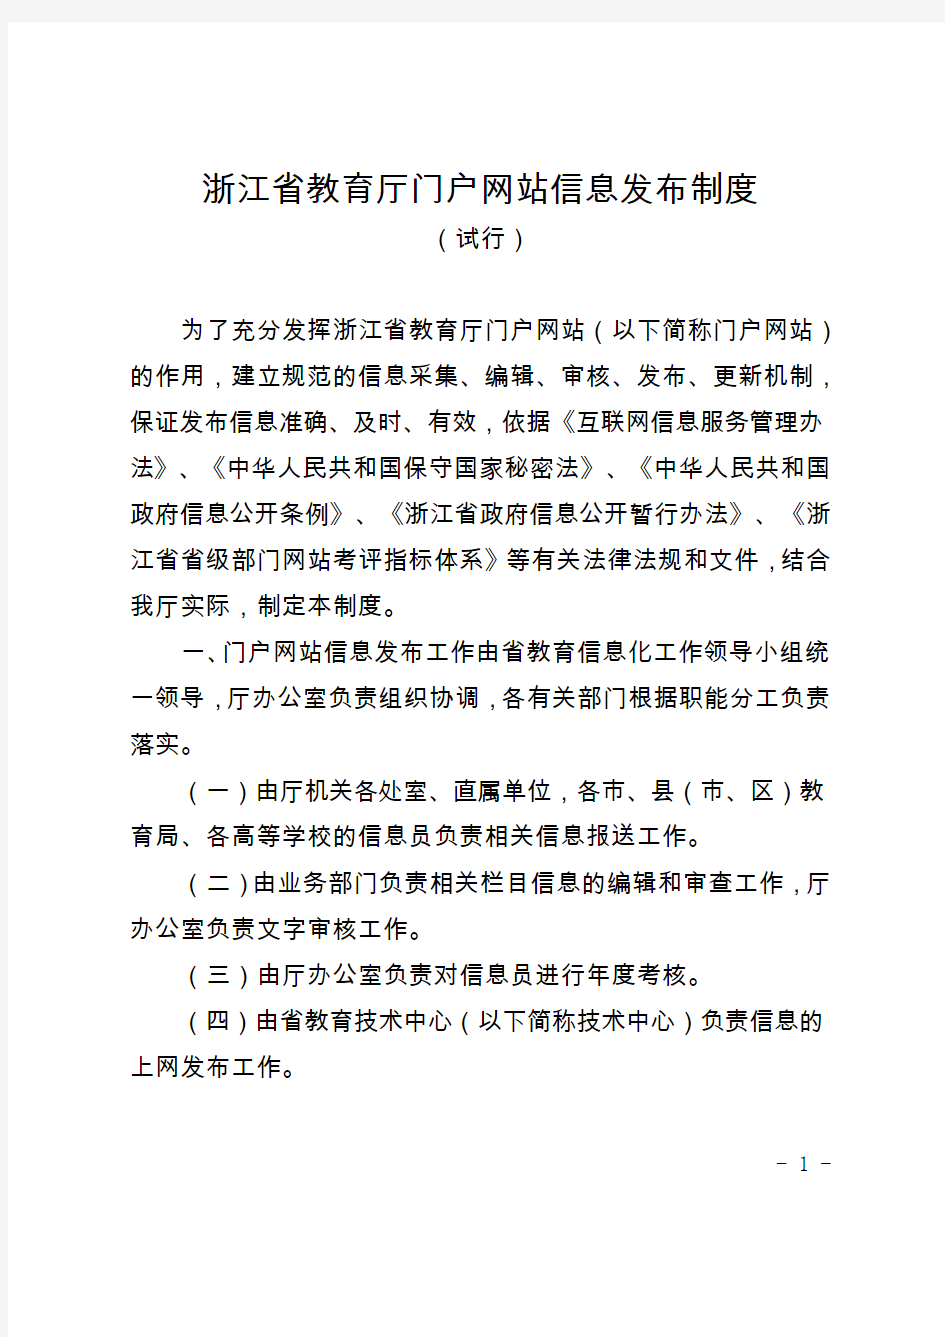 浙江省教育厅门户网站信息发布制度